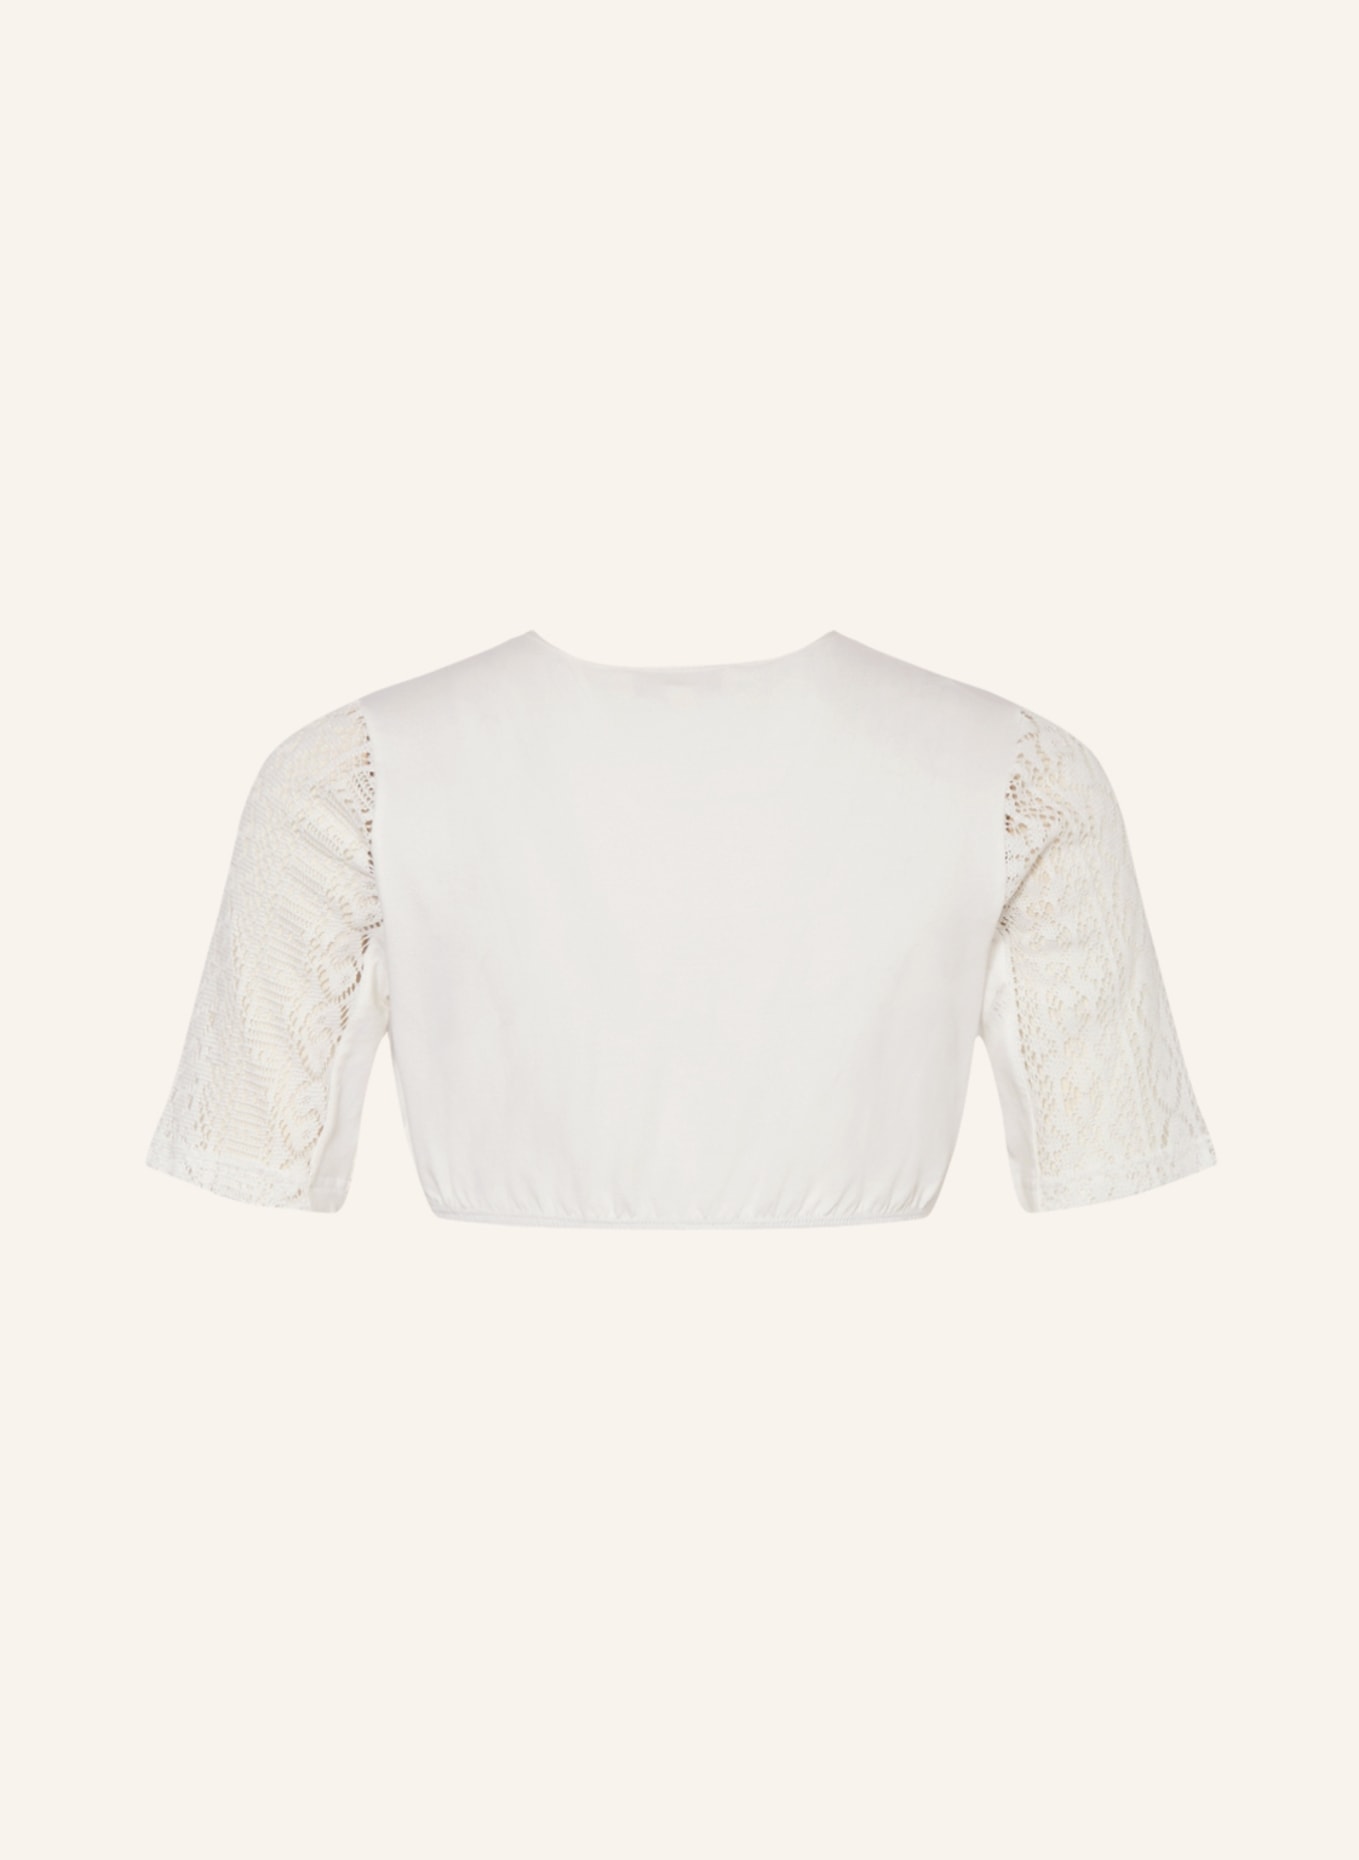 KRÜGER Dirndl blouse, Color: CREAM (Image 2)